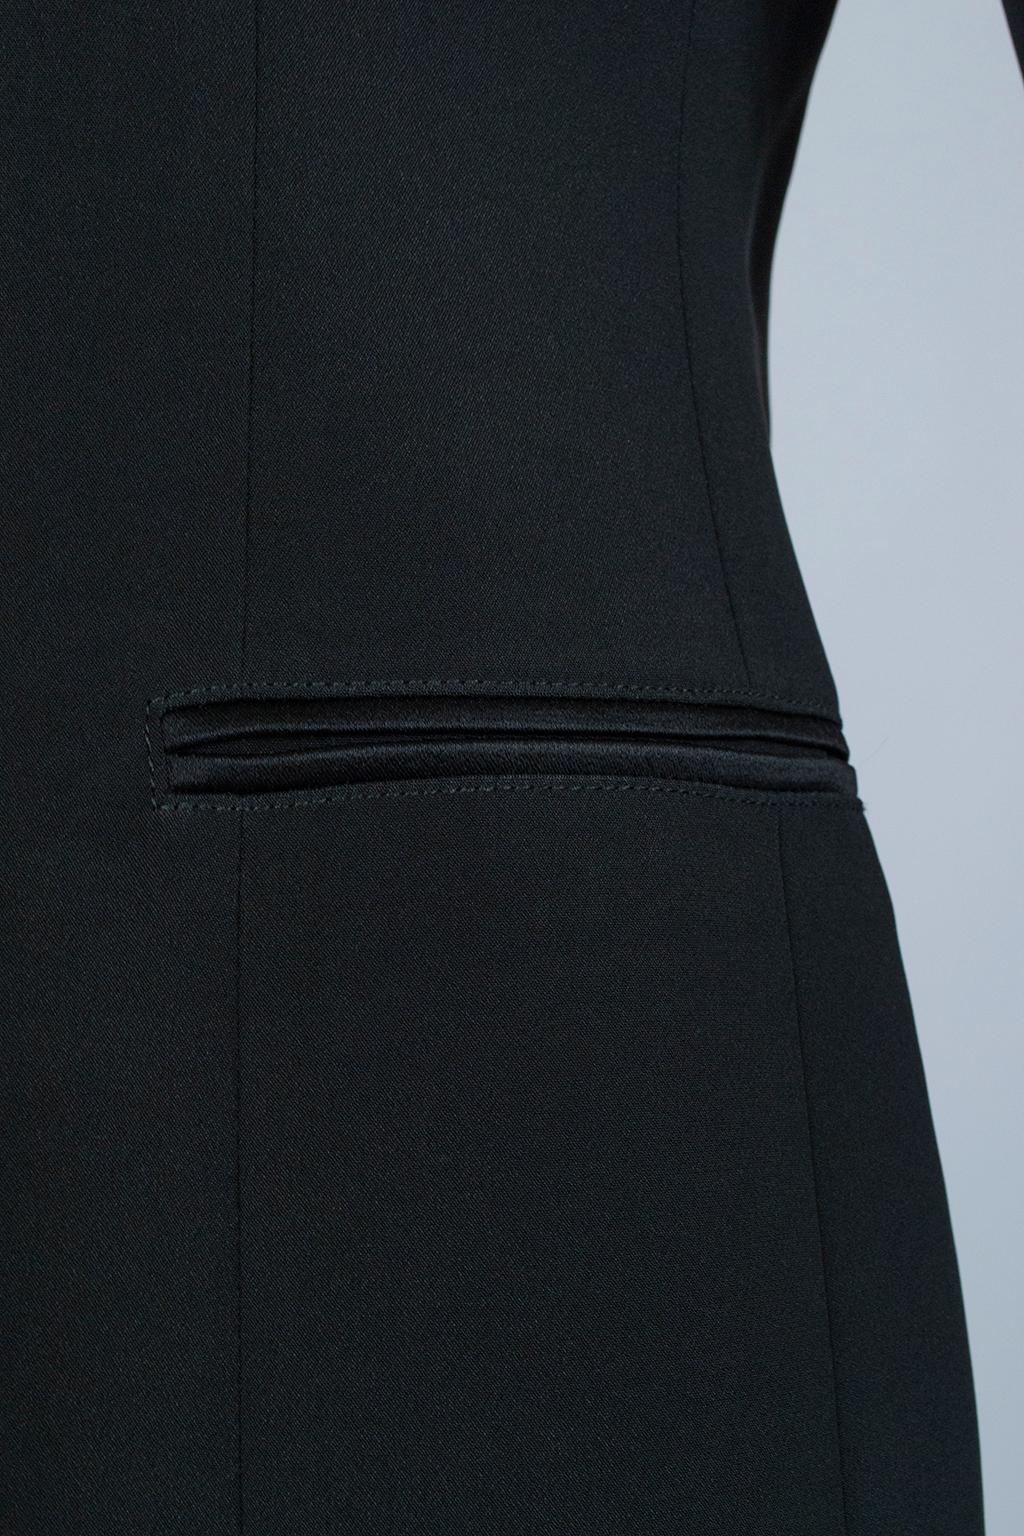 Giorgio Armani Black Silk Faille “Le Smoking” Tuxedo Blazer Jacket - It 42, 2001 For Sale 5